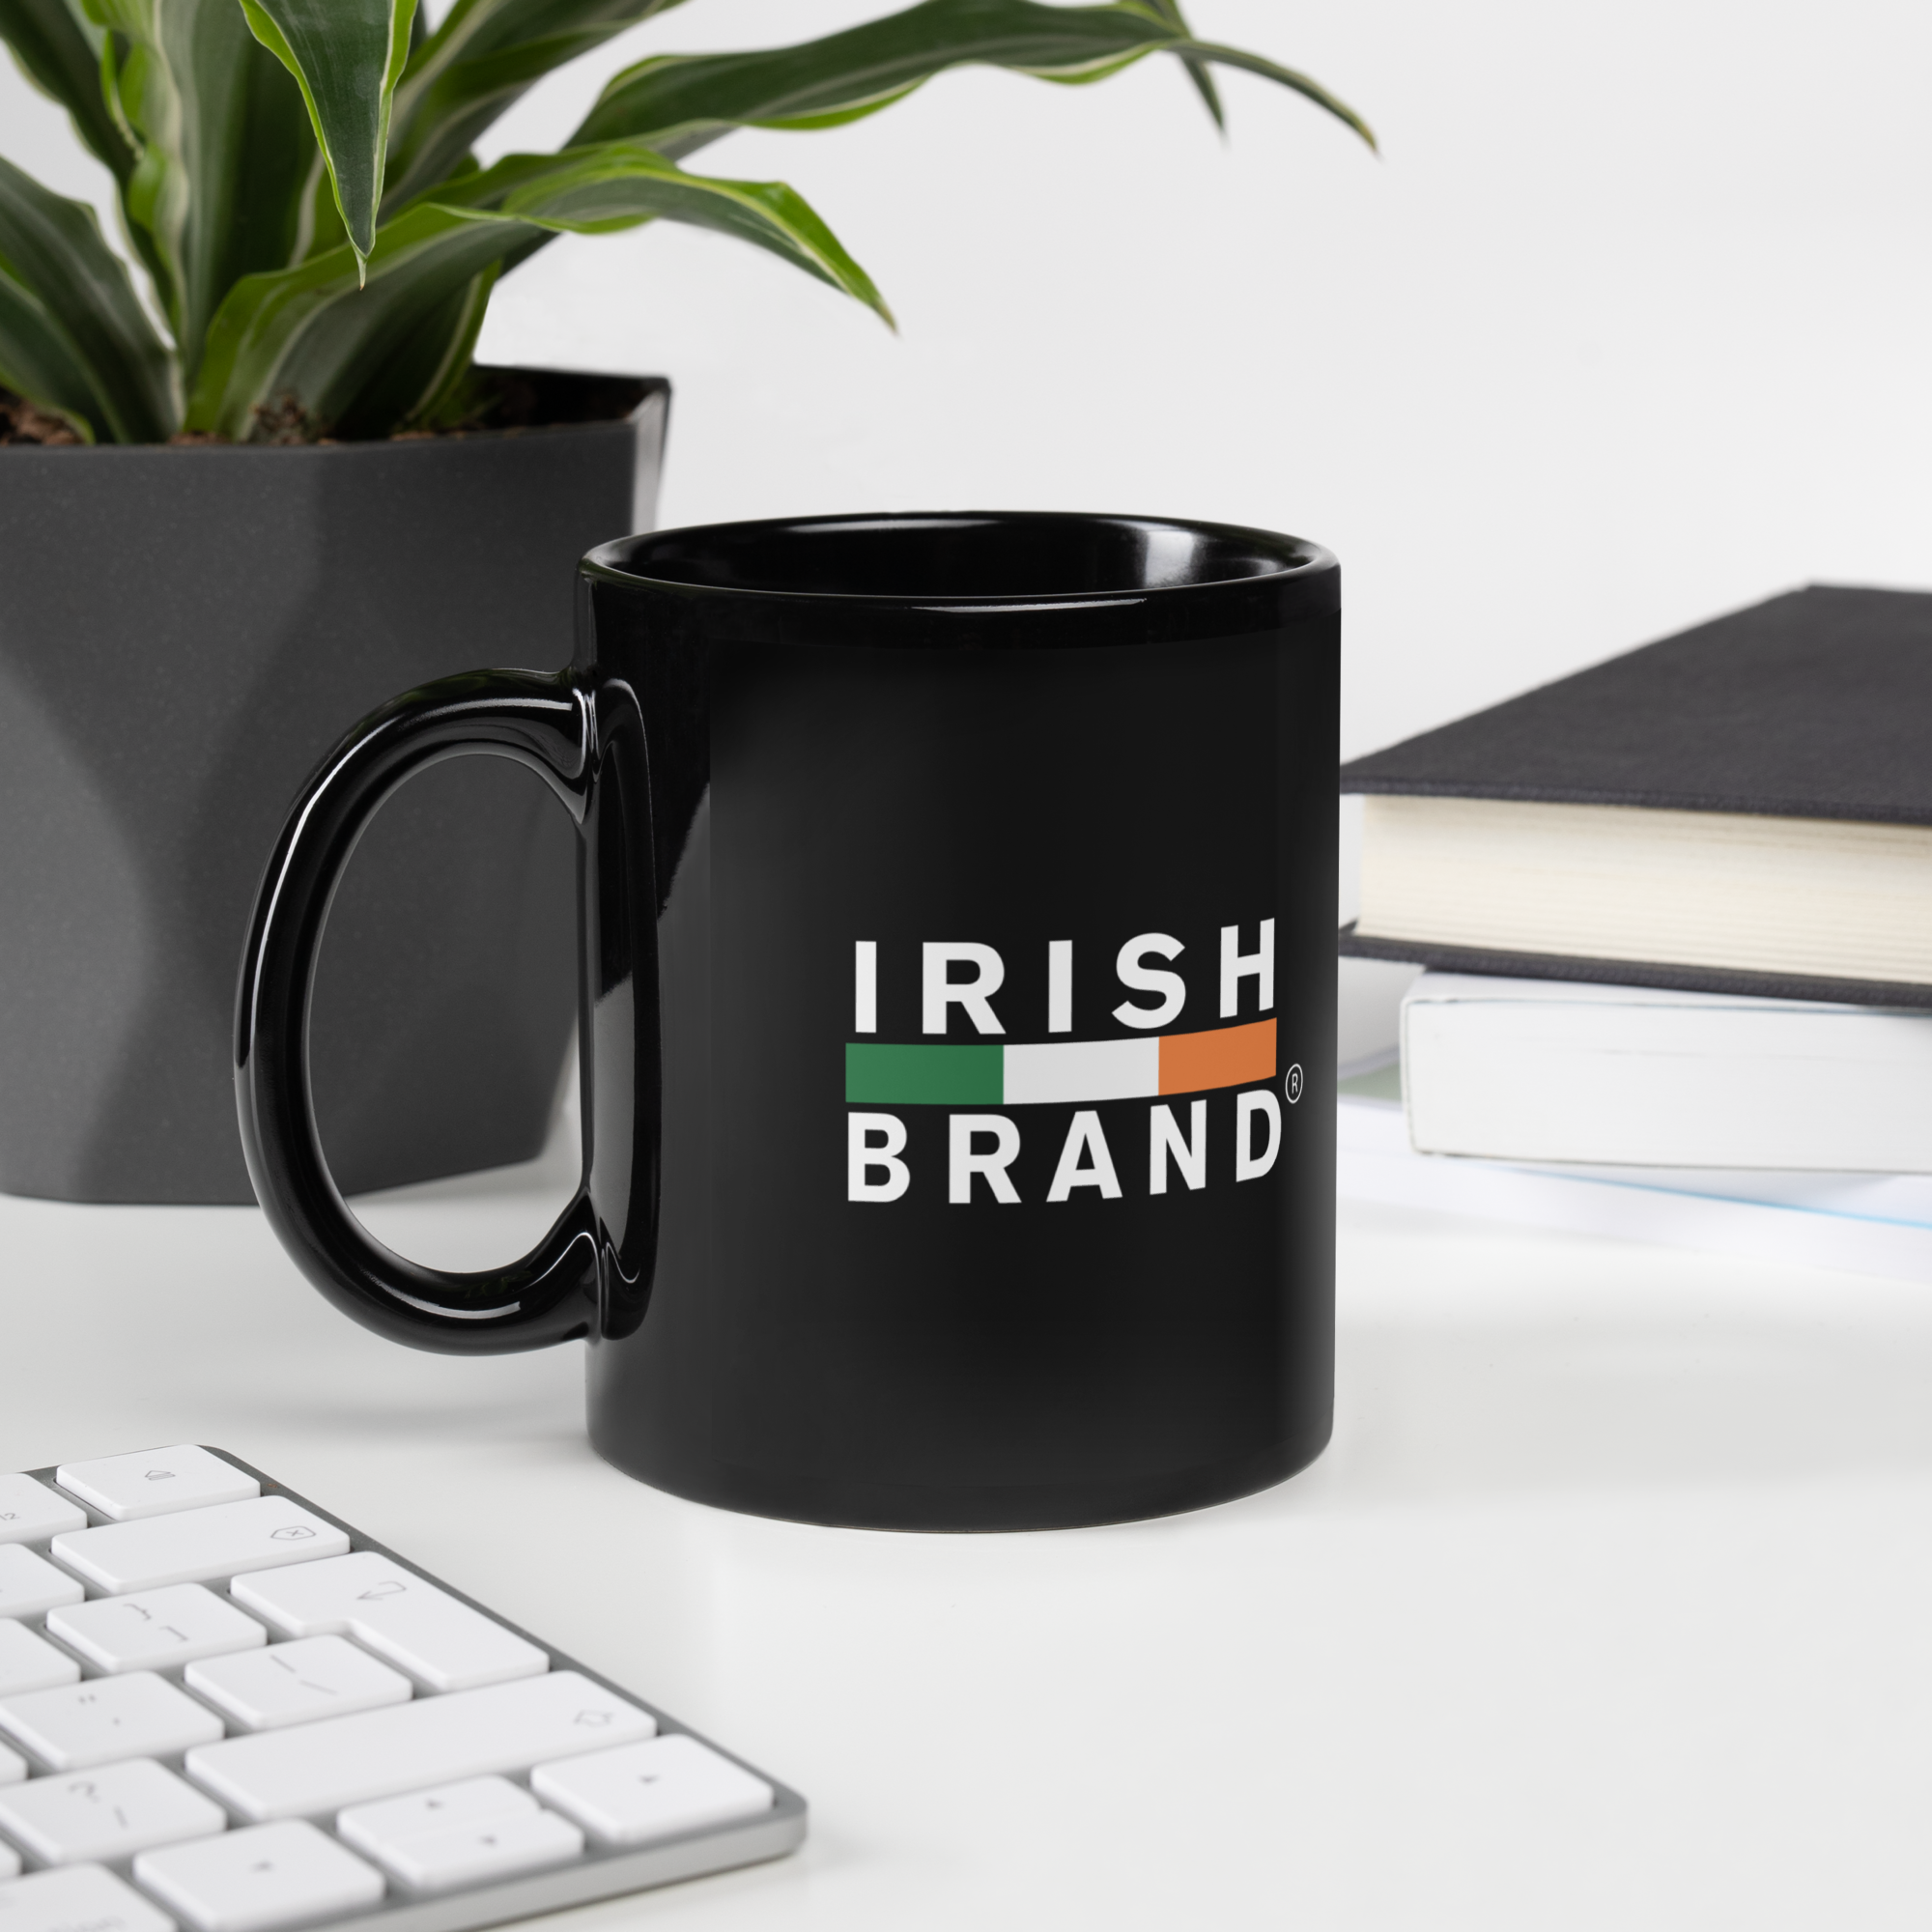 Irish brand Mug